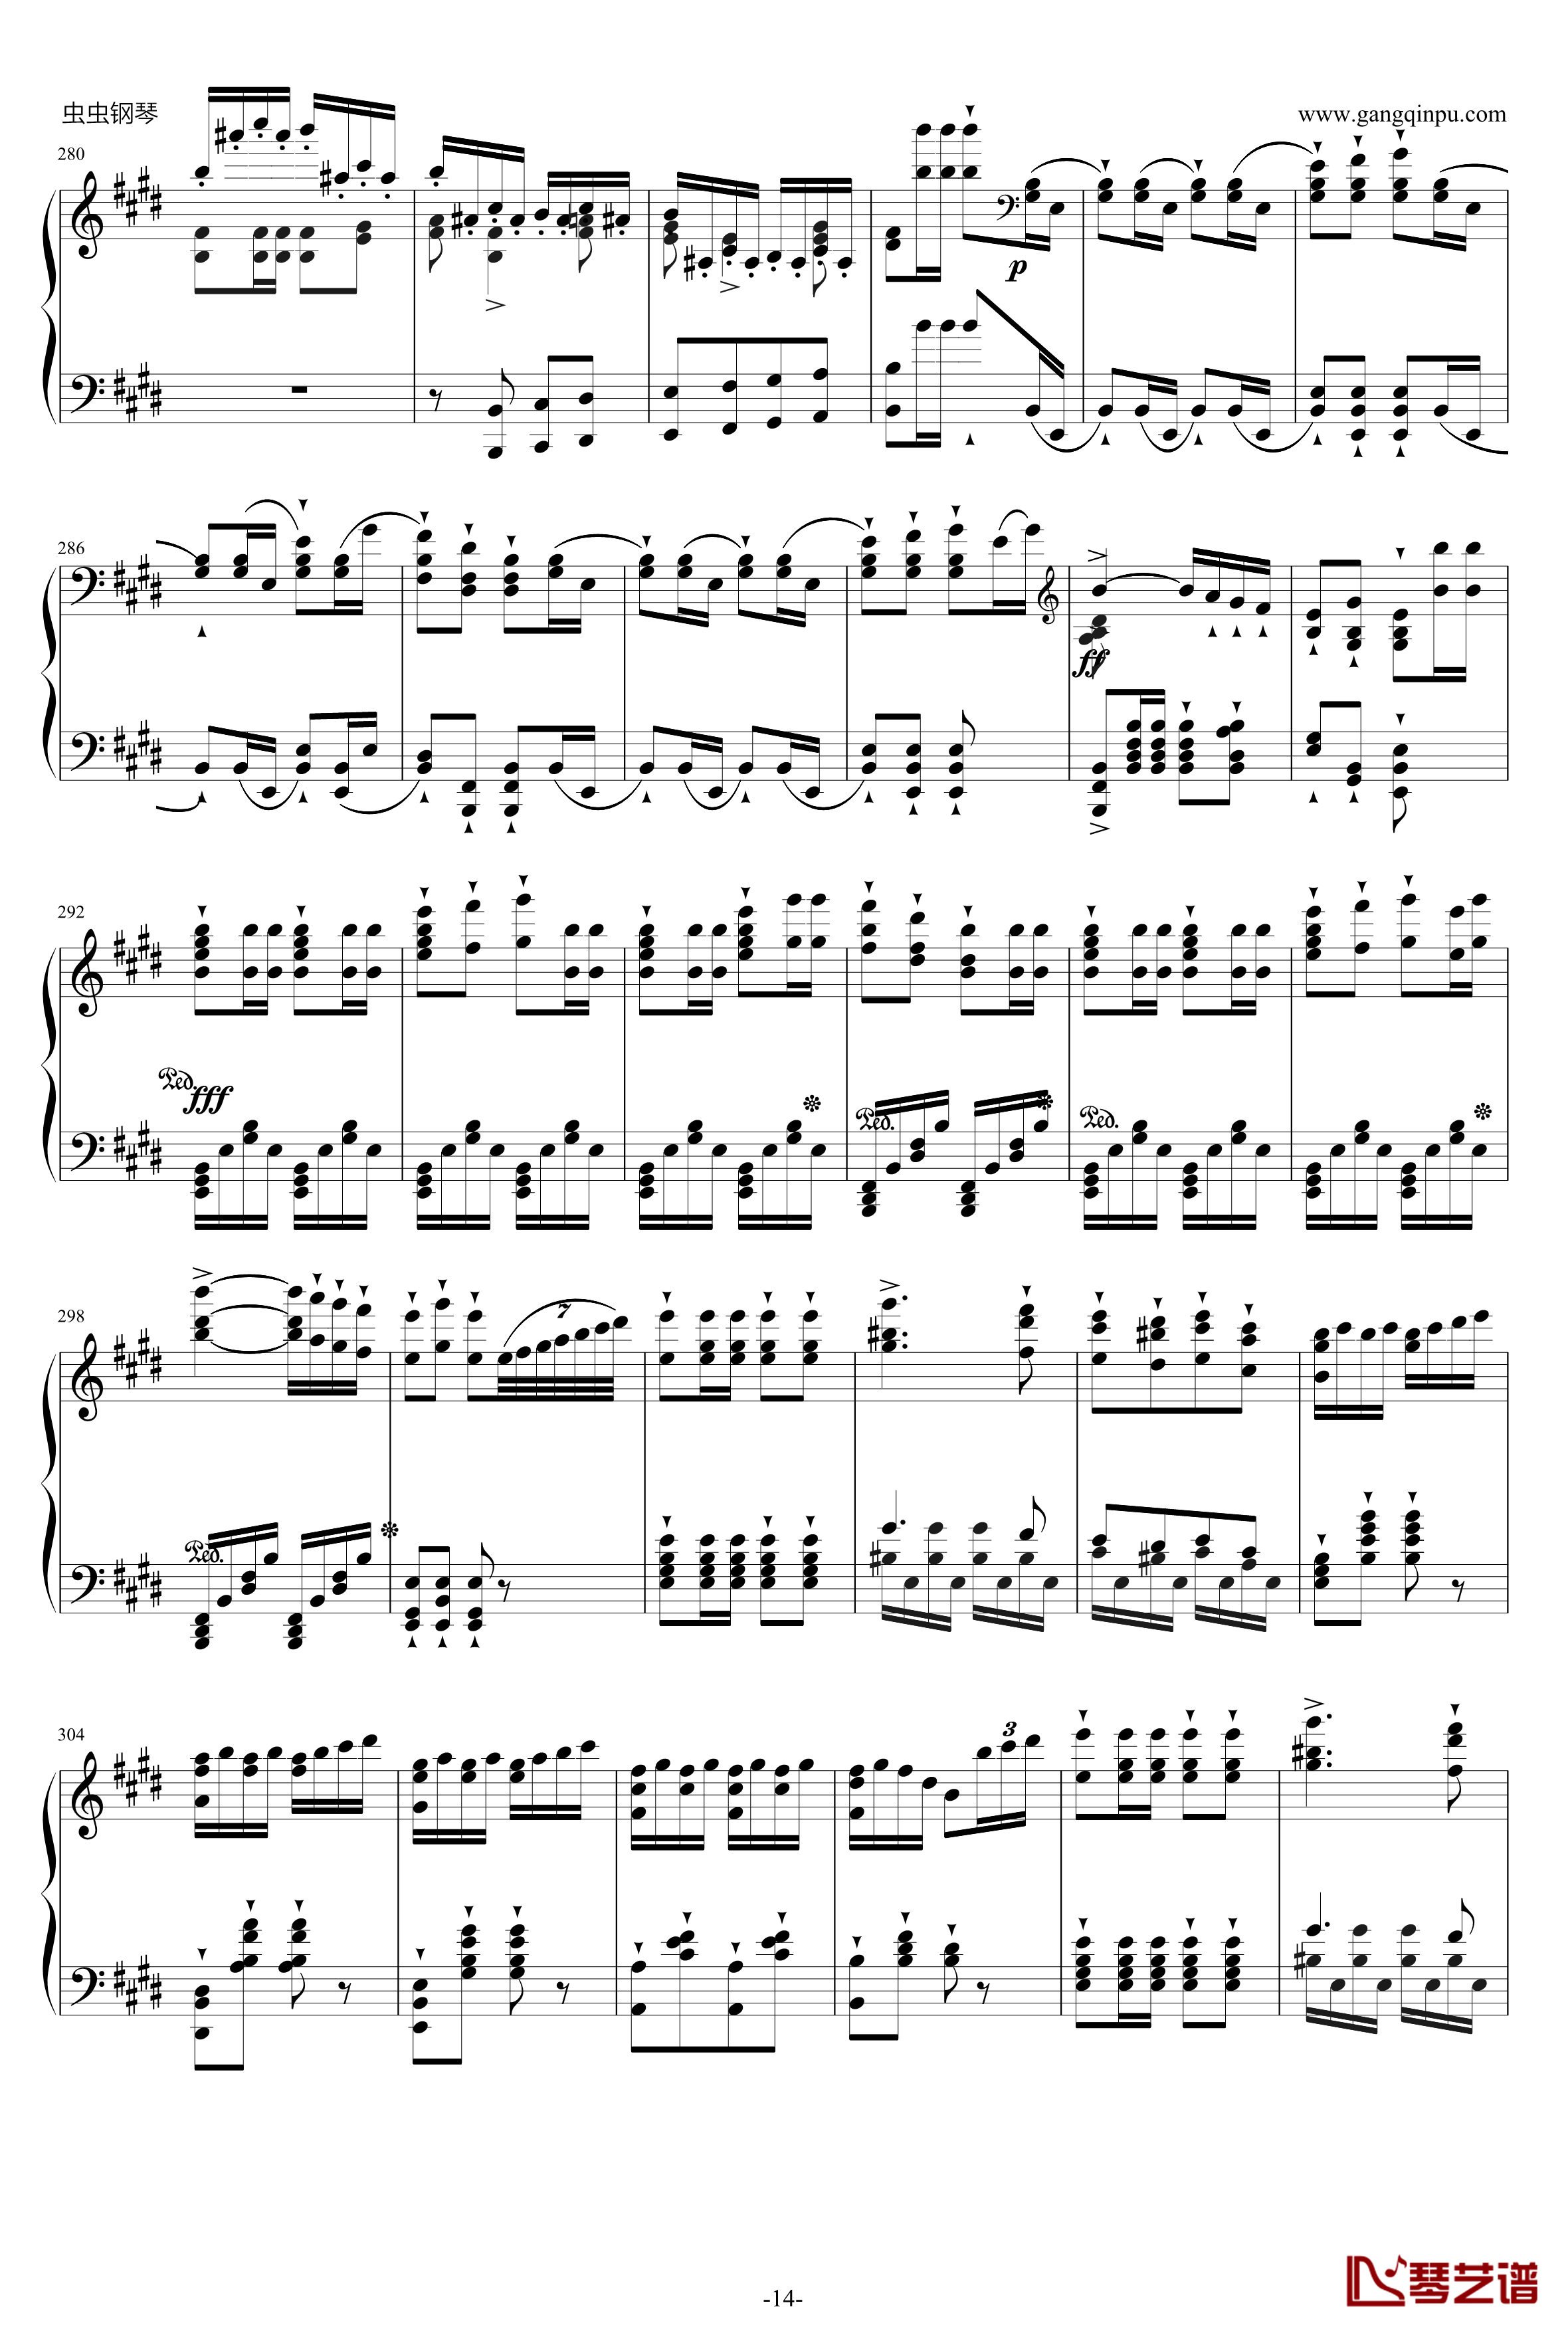 威廉·退尔序曲钢琴谱-李斯特S.55214